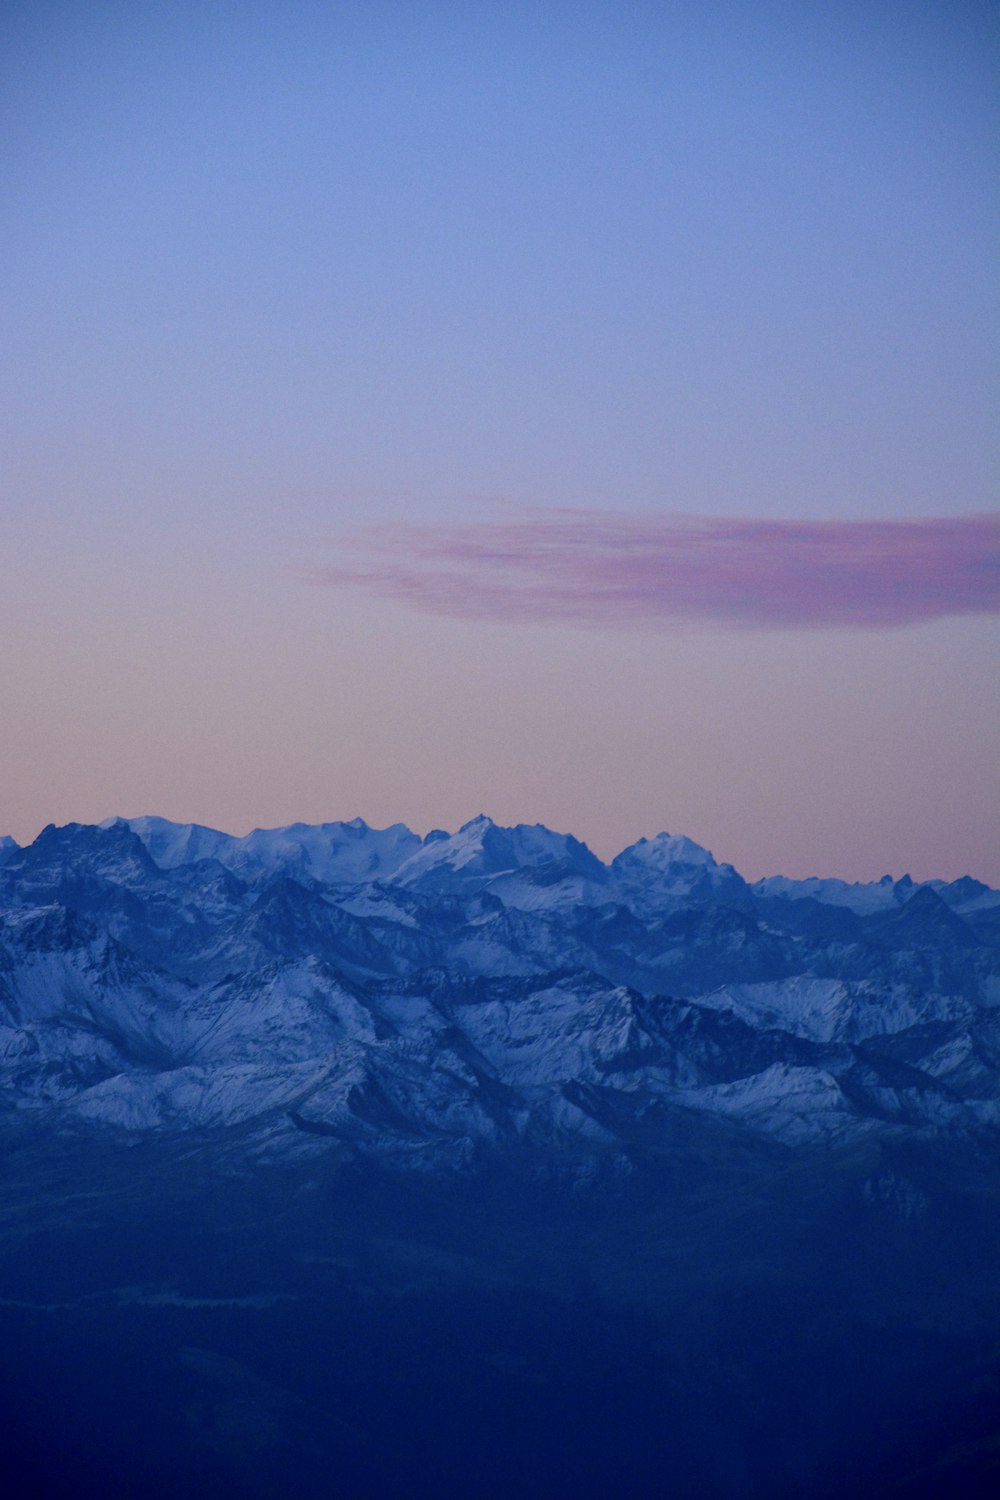 a mountain range with a purple sky